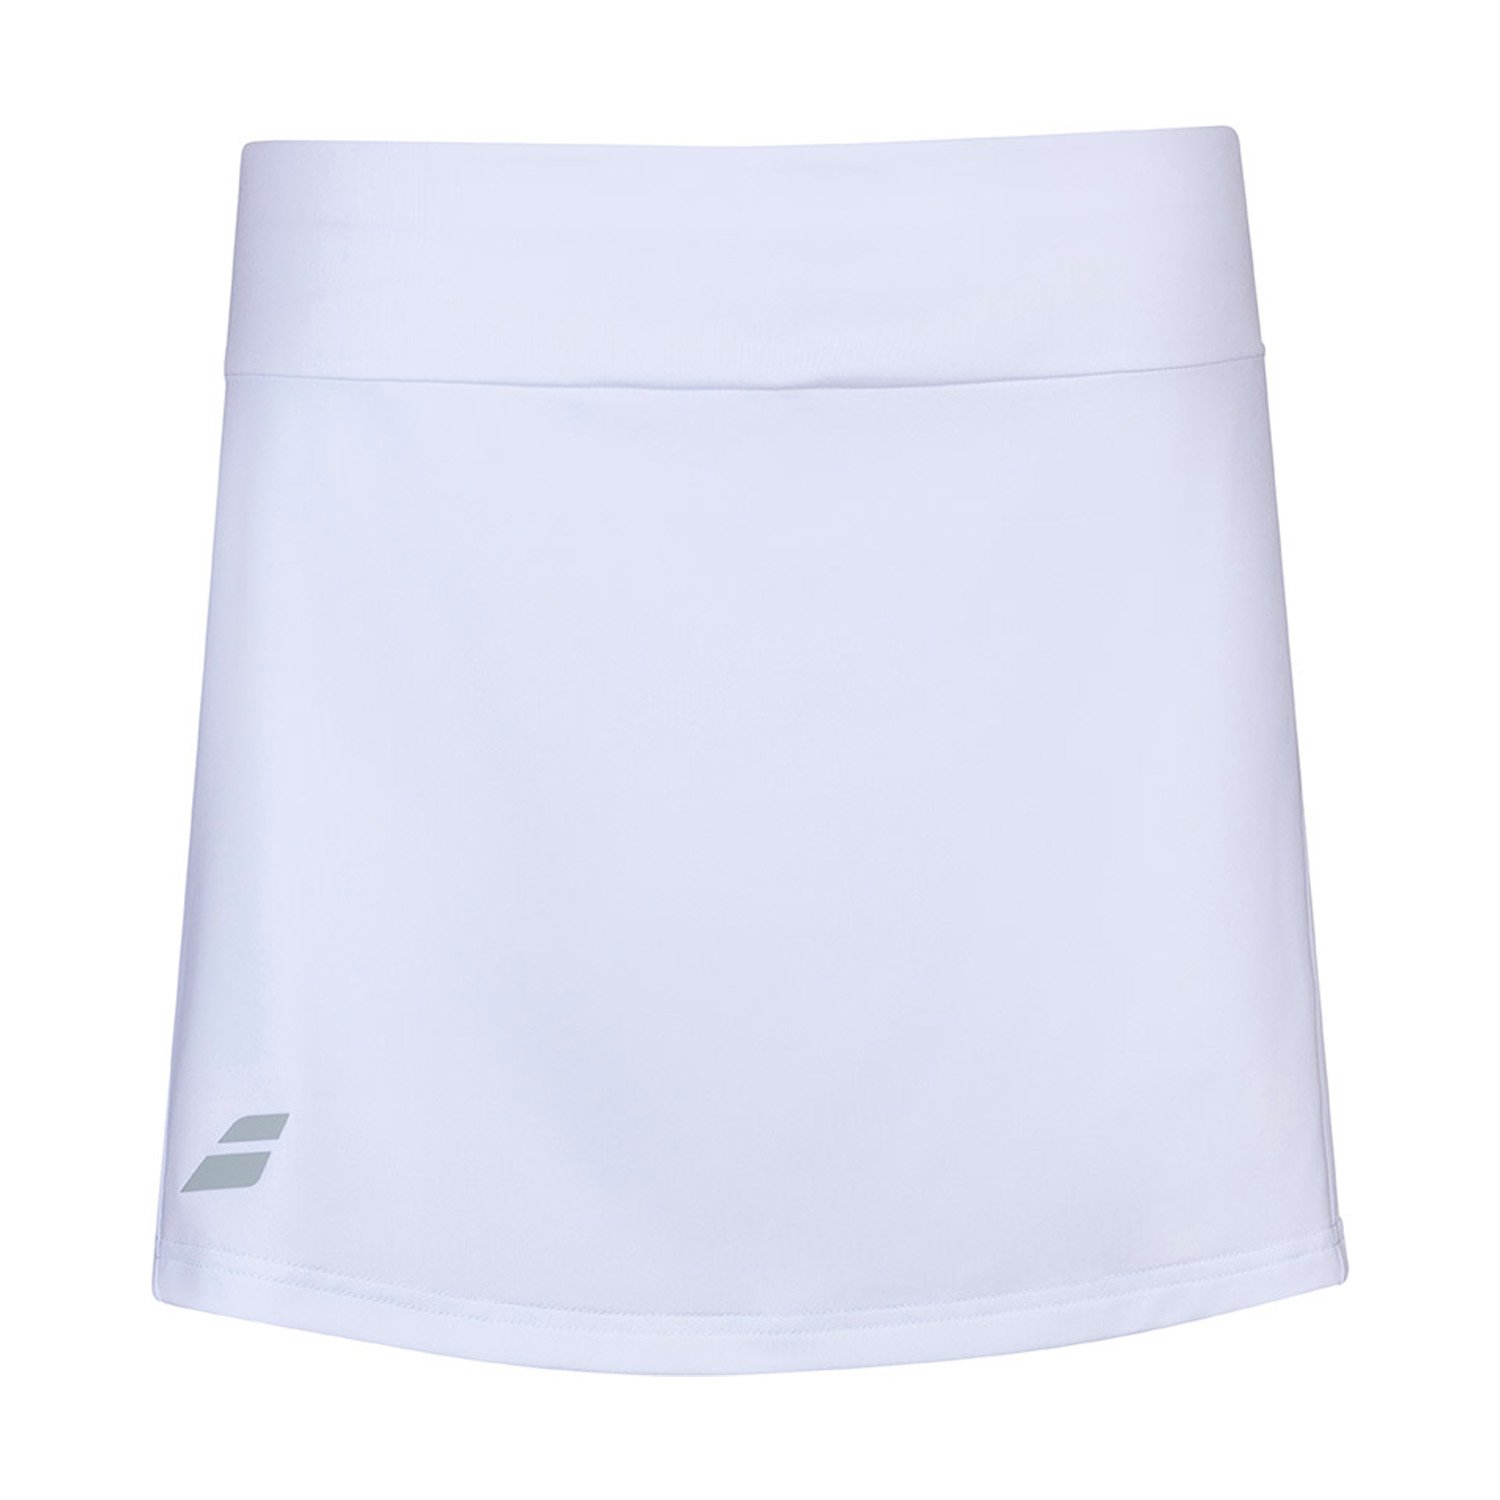 Babolat Play Skirt Kız Çocuk Tenis Eteği - Beyaz - 1